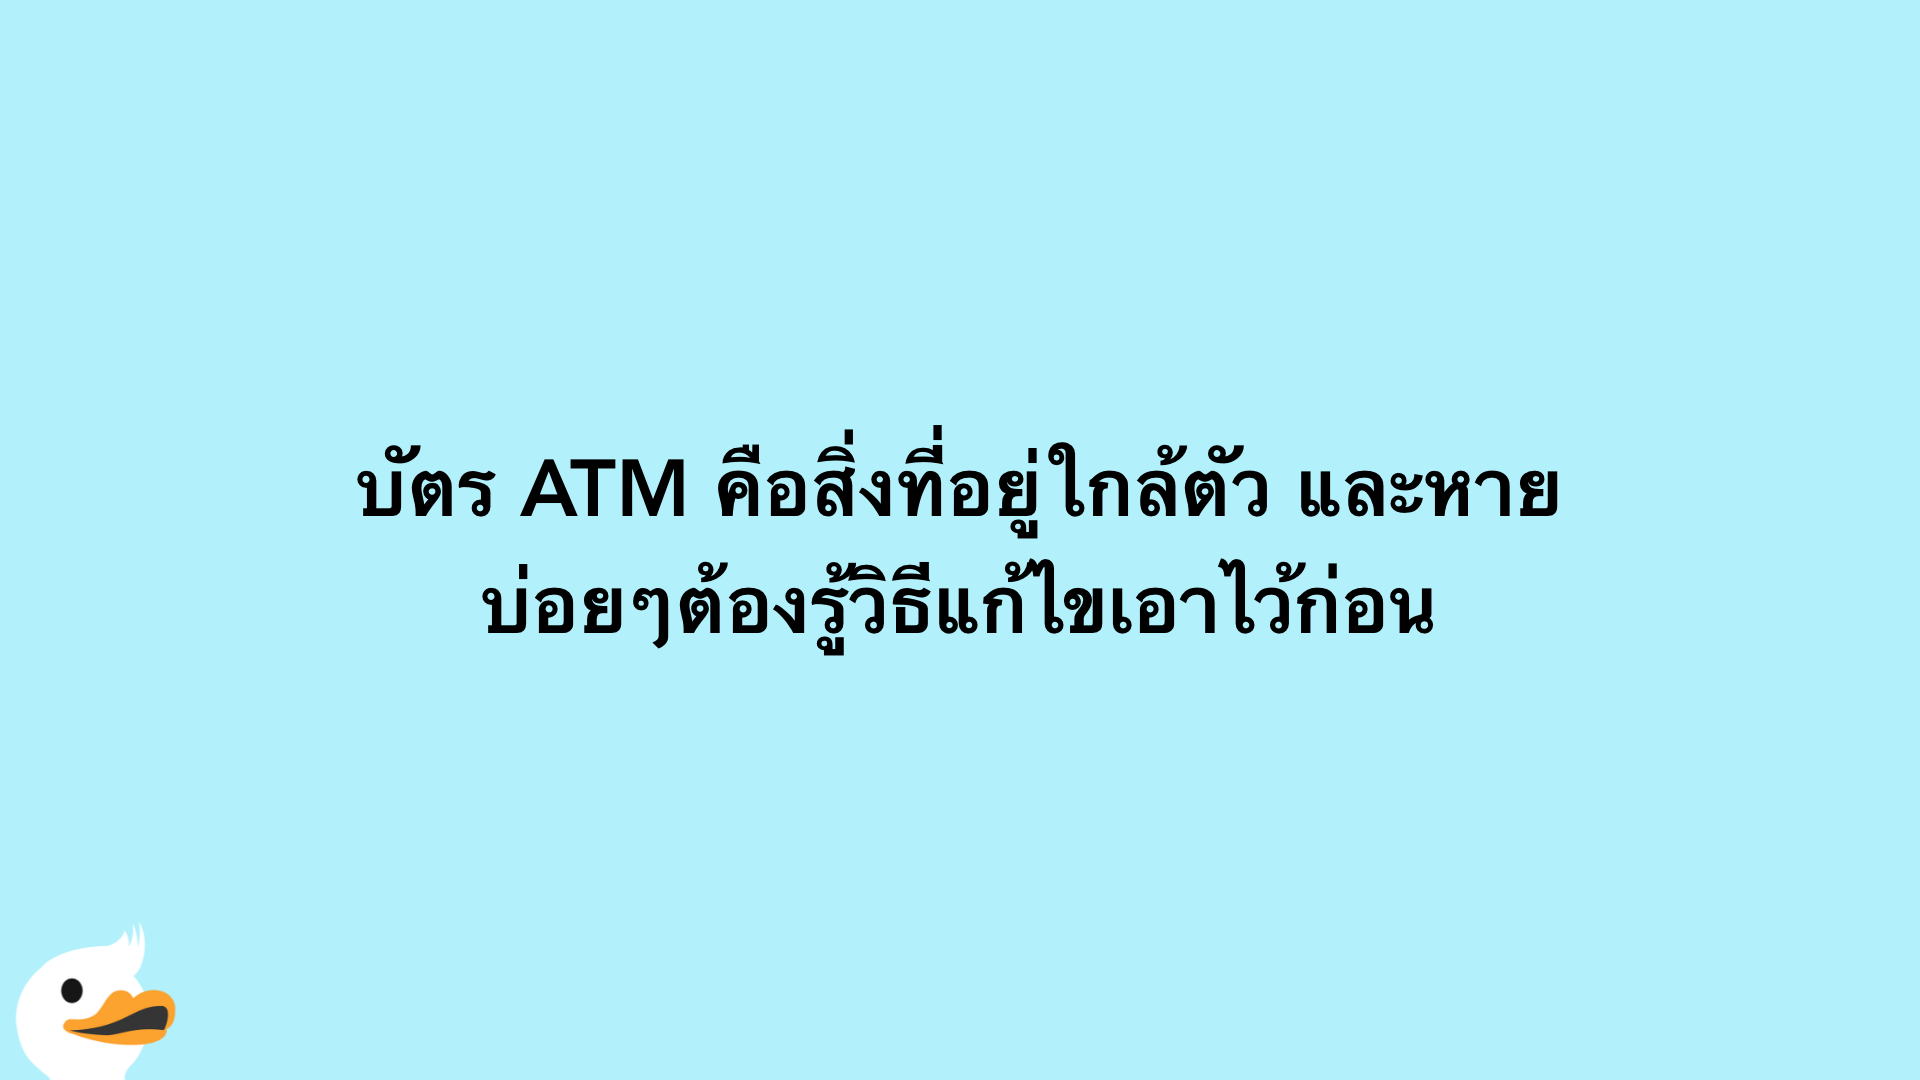 บัตร ATM คือสิ่งที่อยู่ใกล้ตัว และหายบ่อยๆต้องรู้วิธีแก้ไขเอาไว้ก่อน